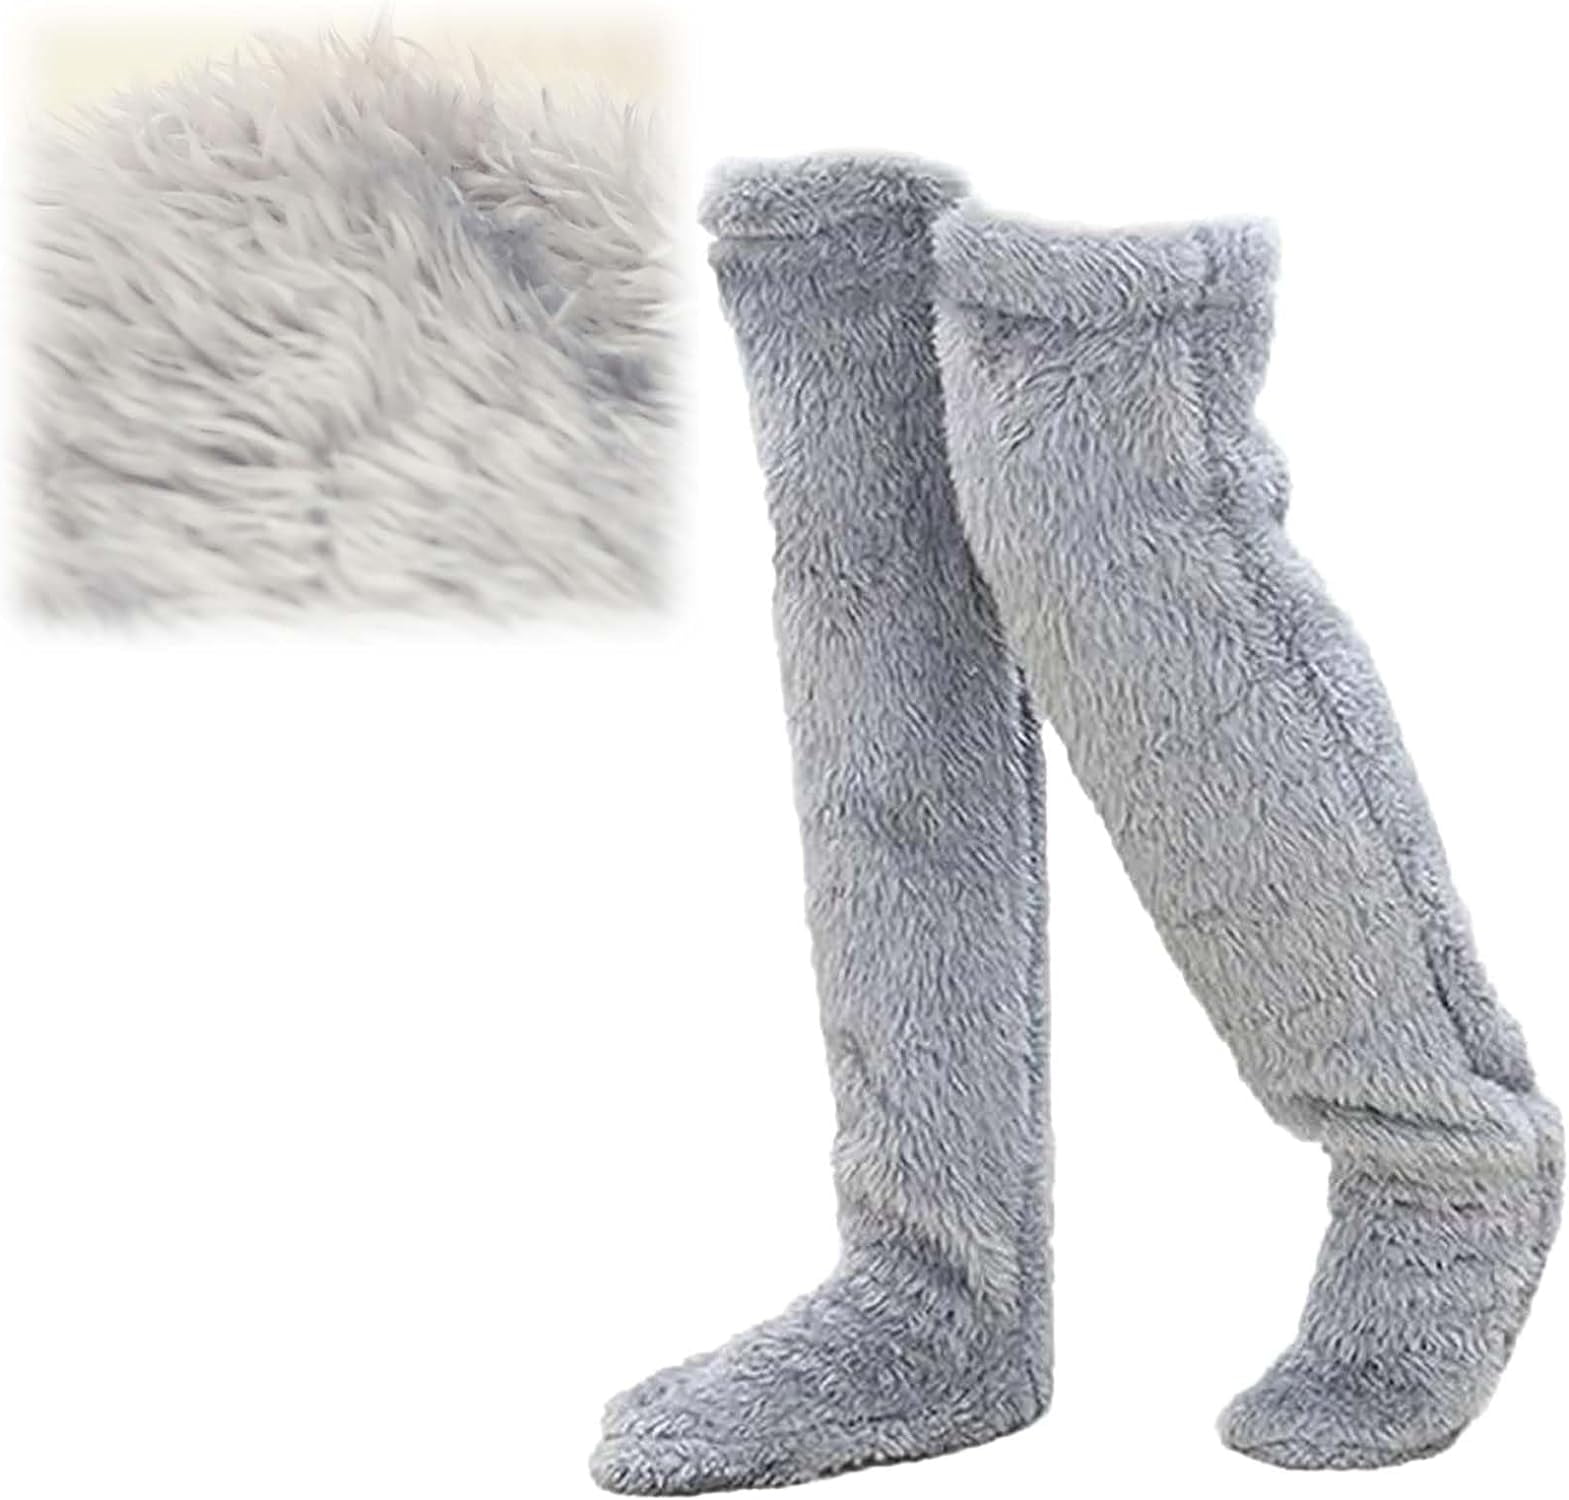 Snuggs Cozy Socks,Snugglepaws Sock Slippers,Snuggs Footwear,Knee